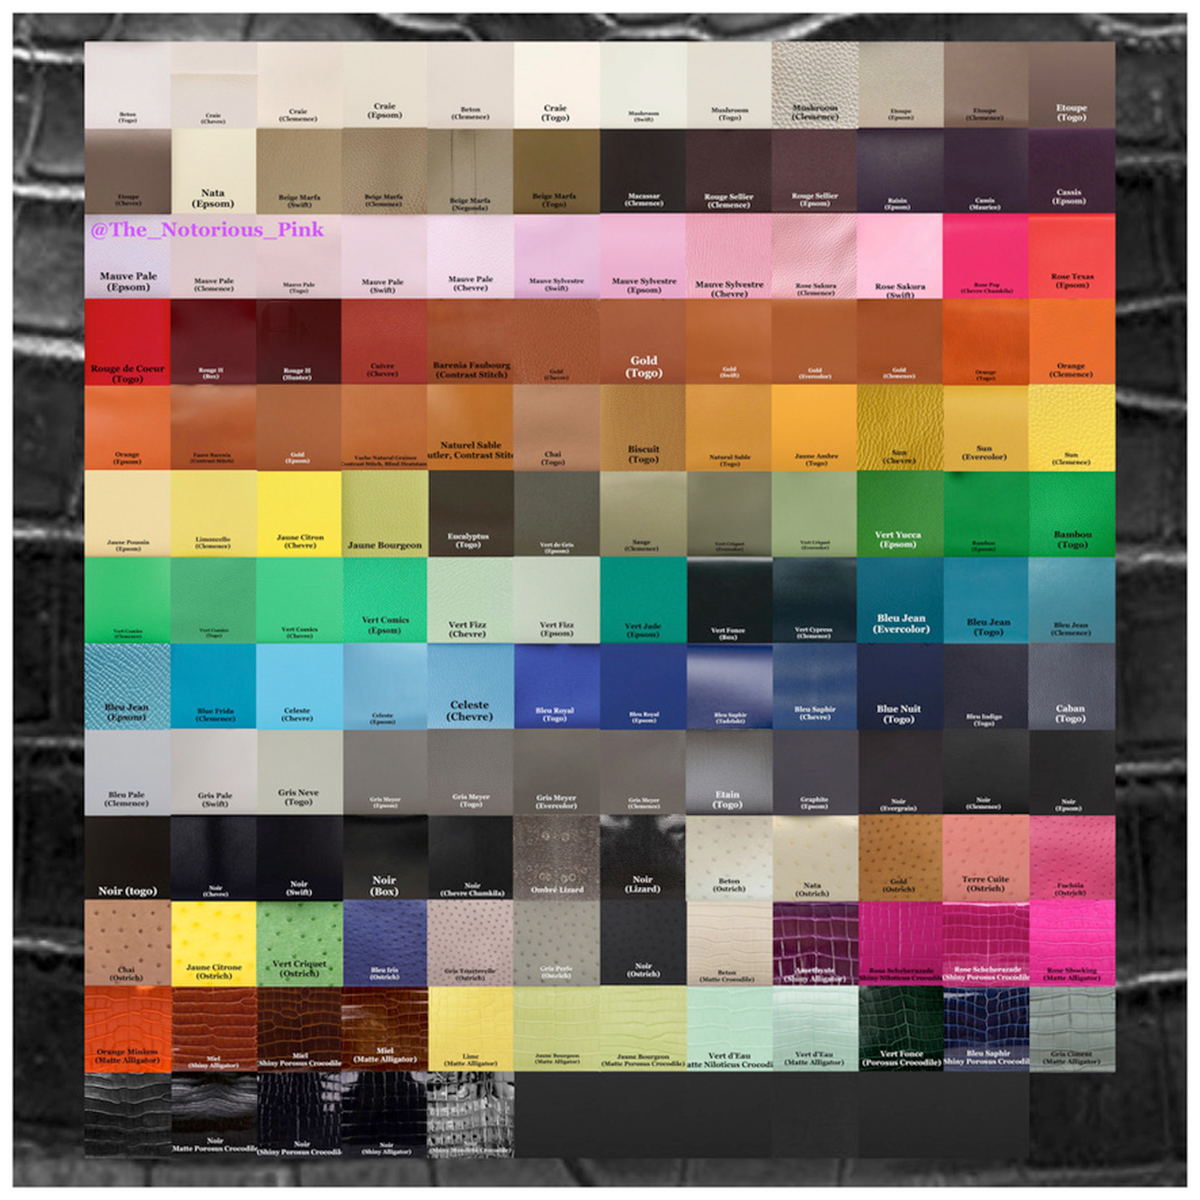 Hermes Colour Palette for 2023 - Glam & Glitter